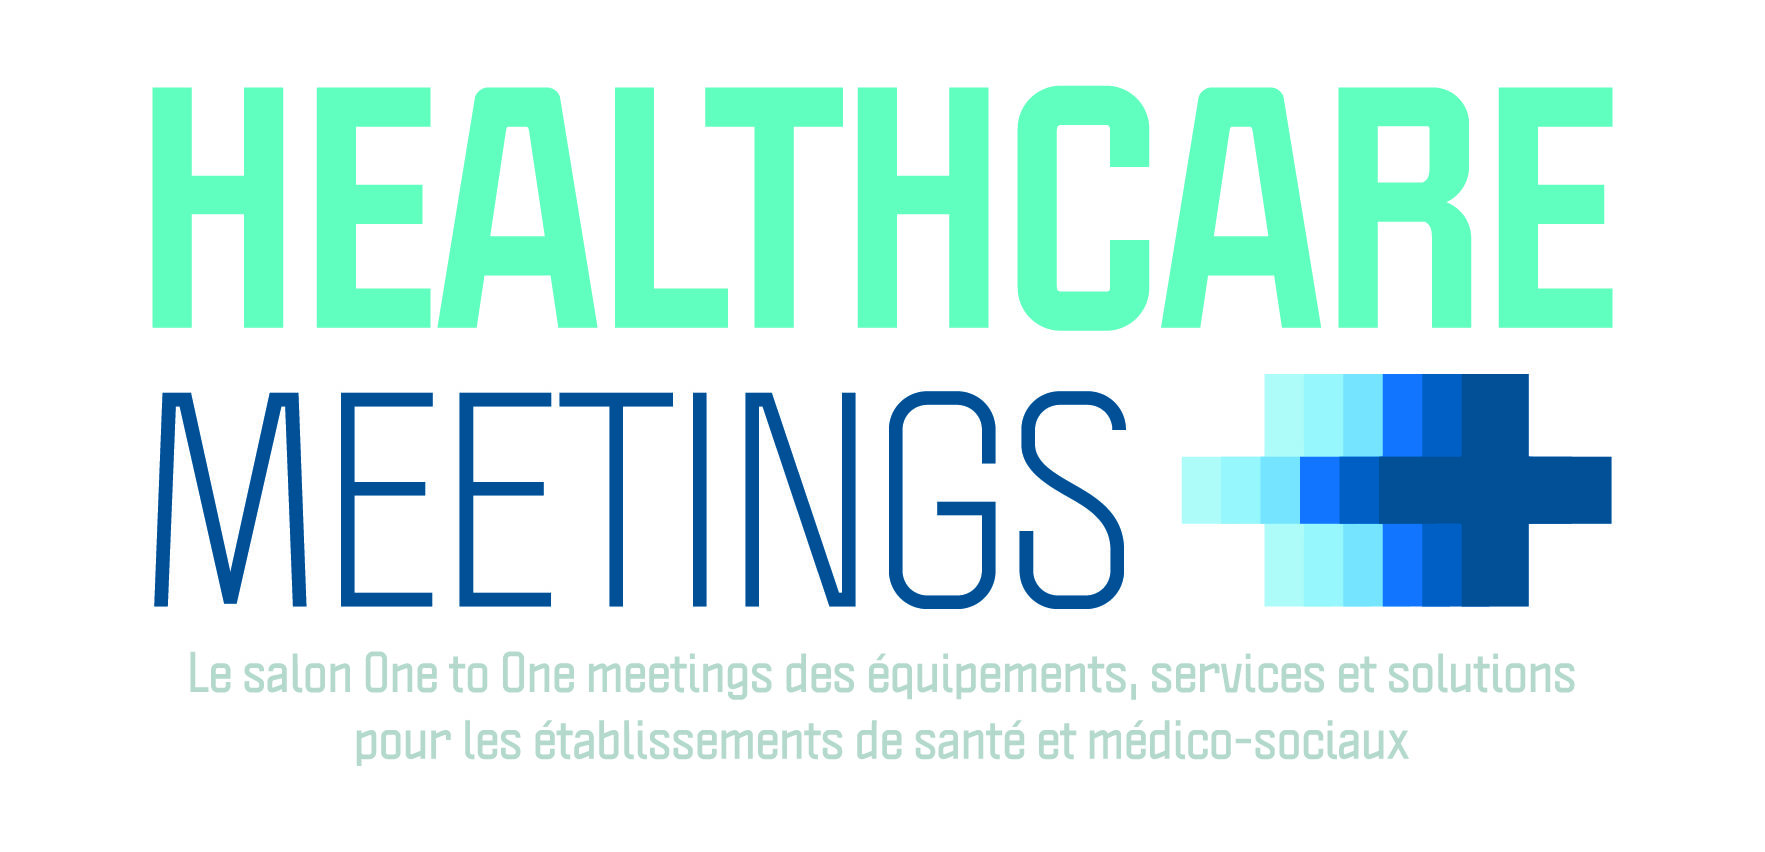 Healthcare Meetings